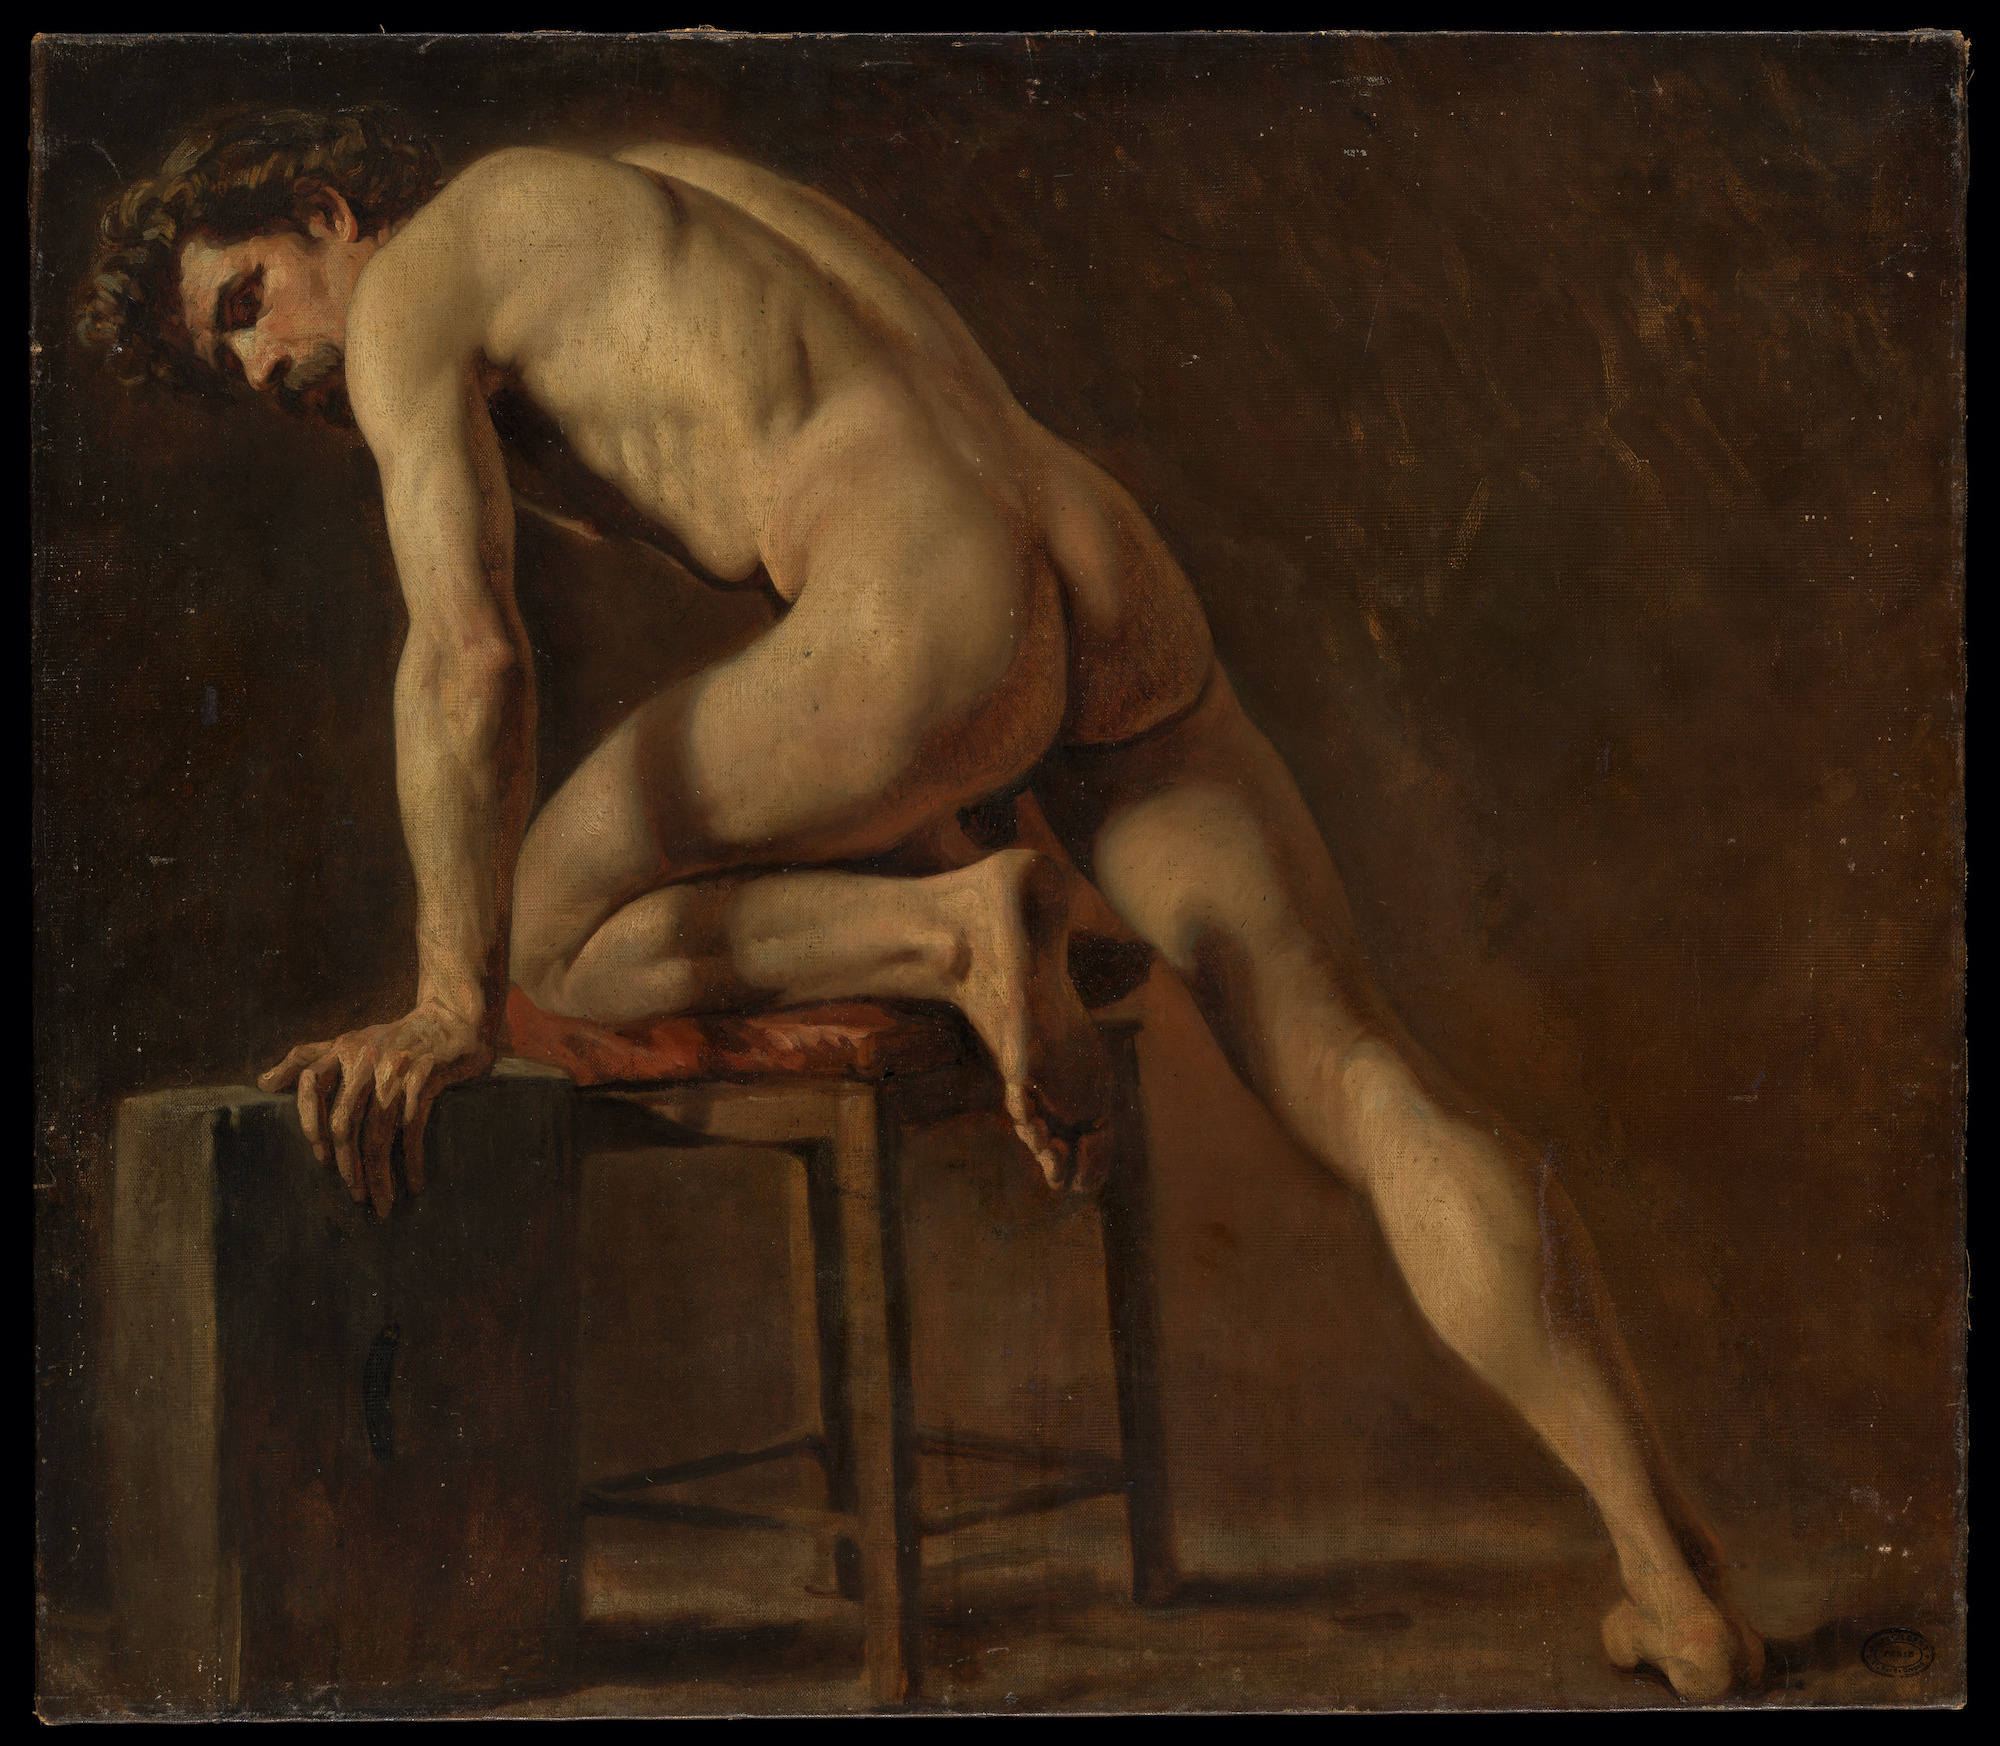 Этюд обнажённого мужчины (Study of a Nude Man) by Gustave Courbet - начало 1840-х гг - 73.7 × 84.1 см 